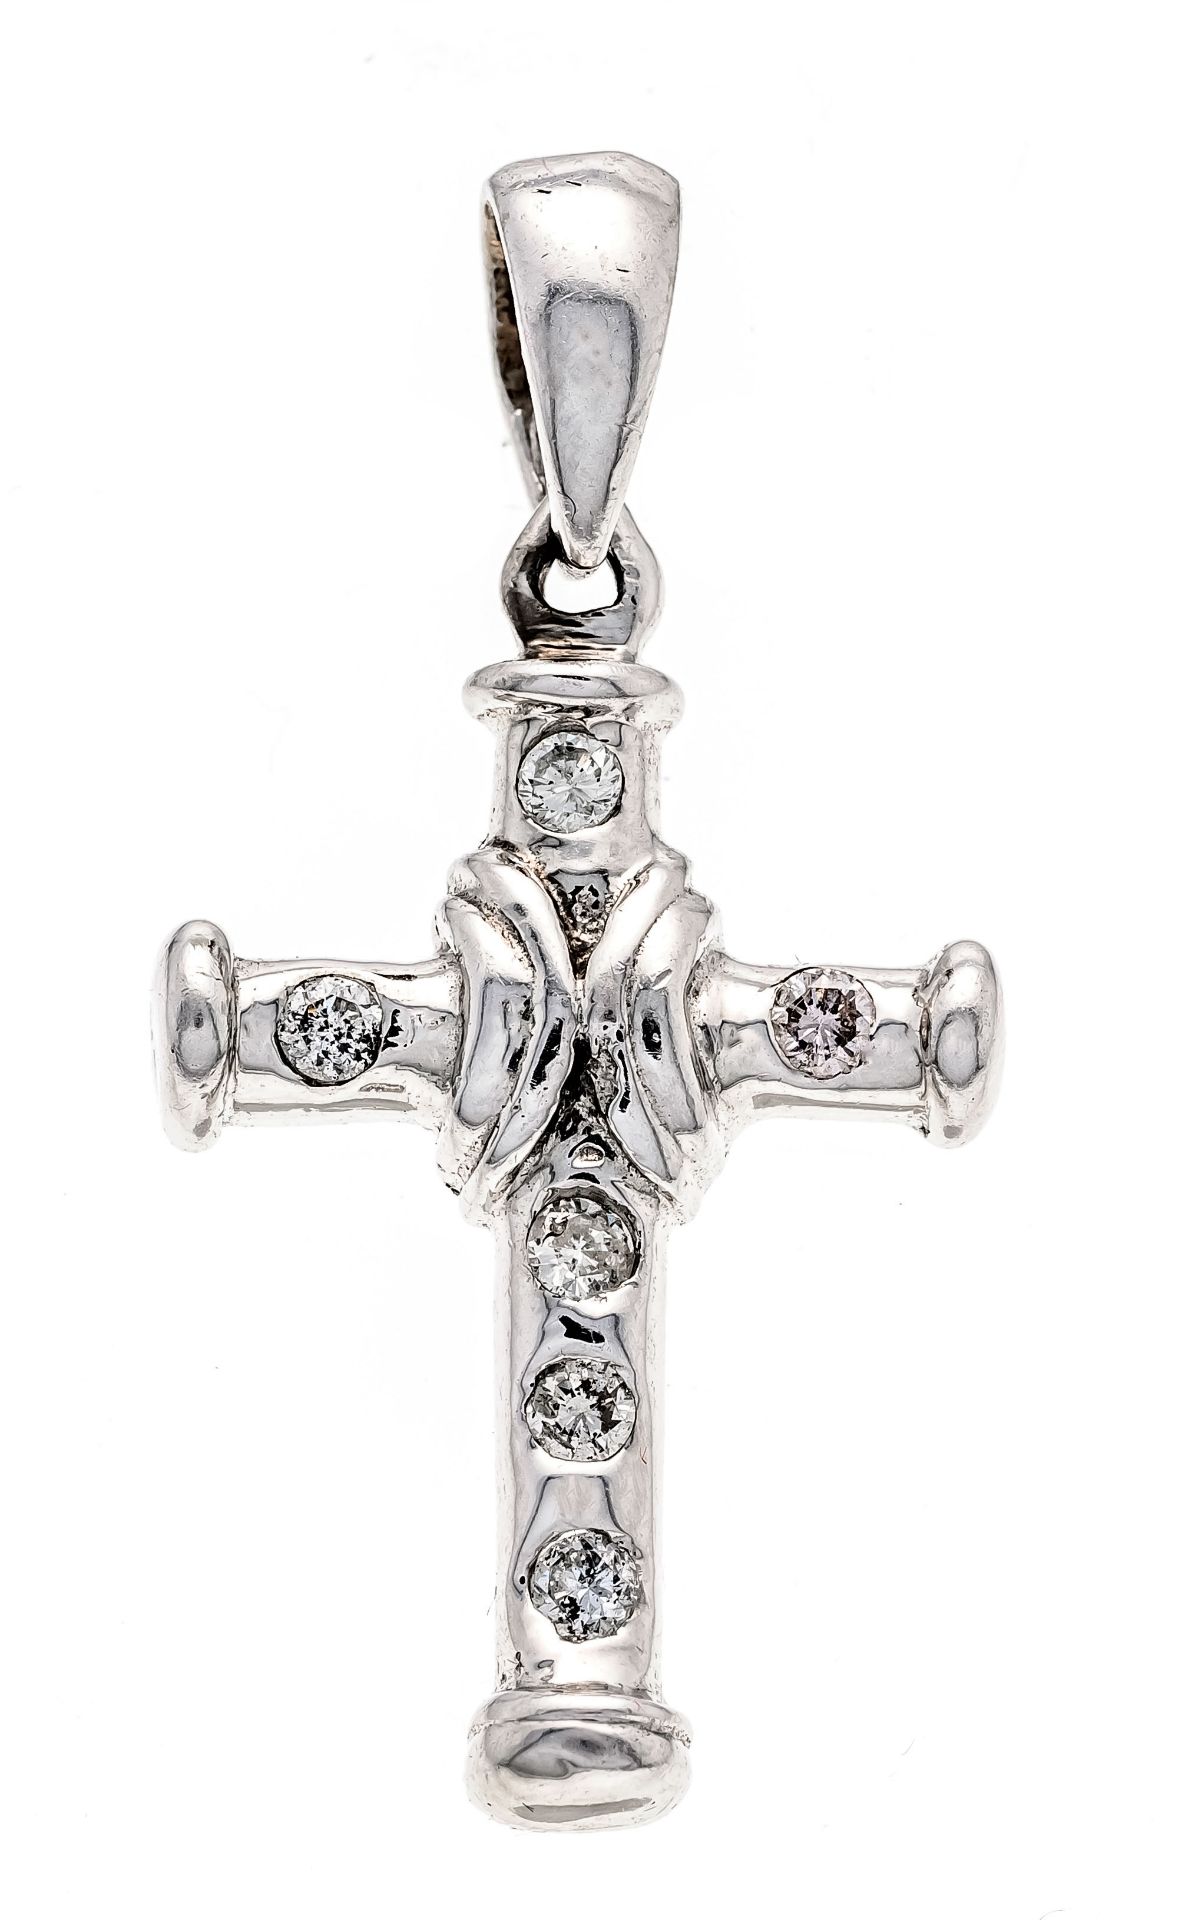 Cross pendant WG 585/000 with 7 brilliant-cut diamonds, add. 0.18 ct l.tintedW/SI, l. 31 mm, 3.1 g